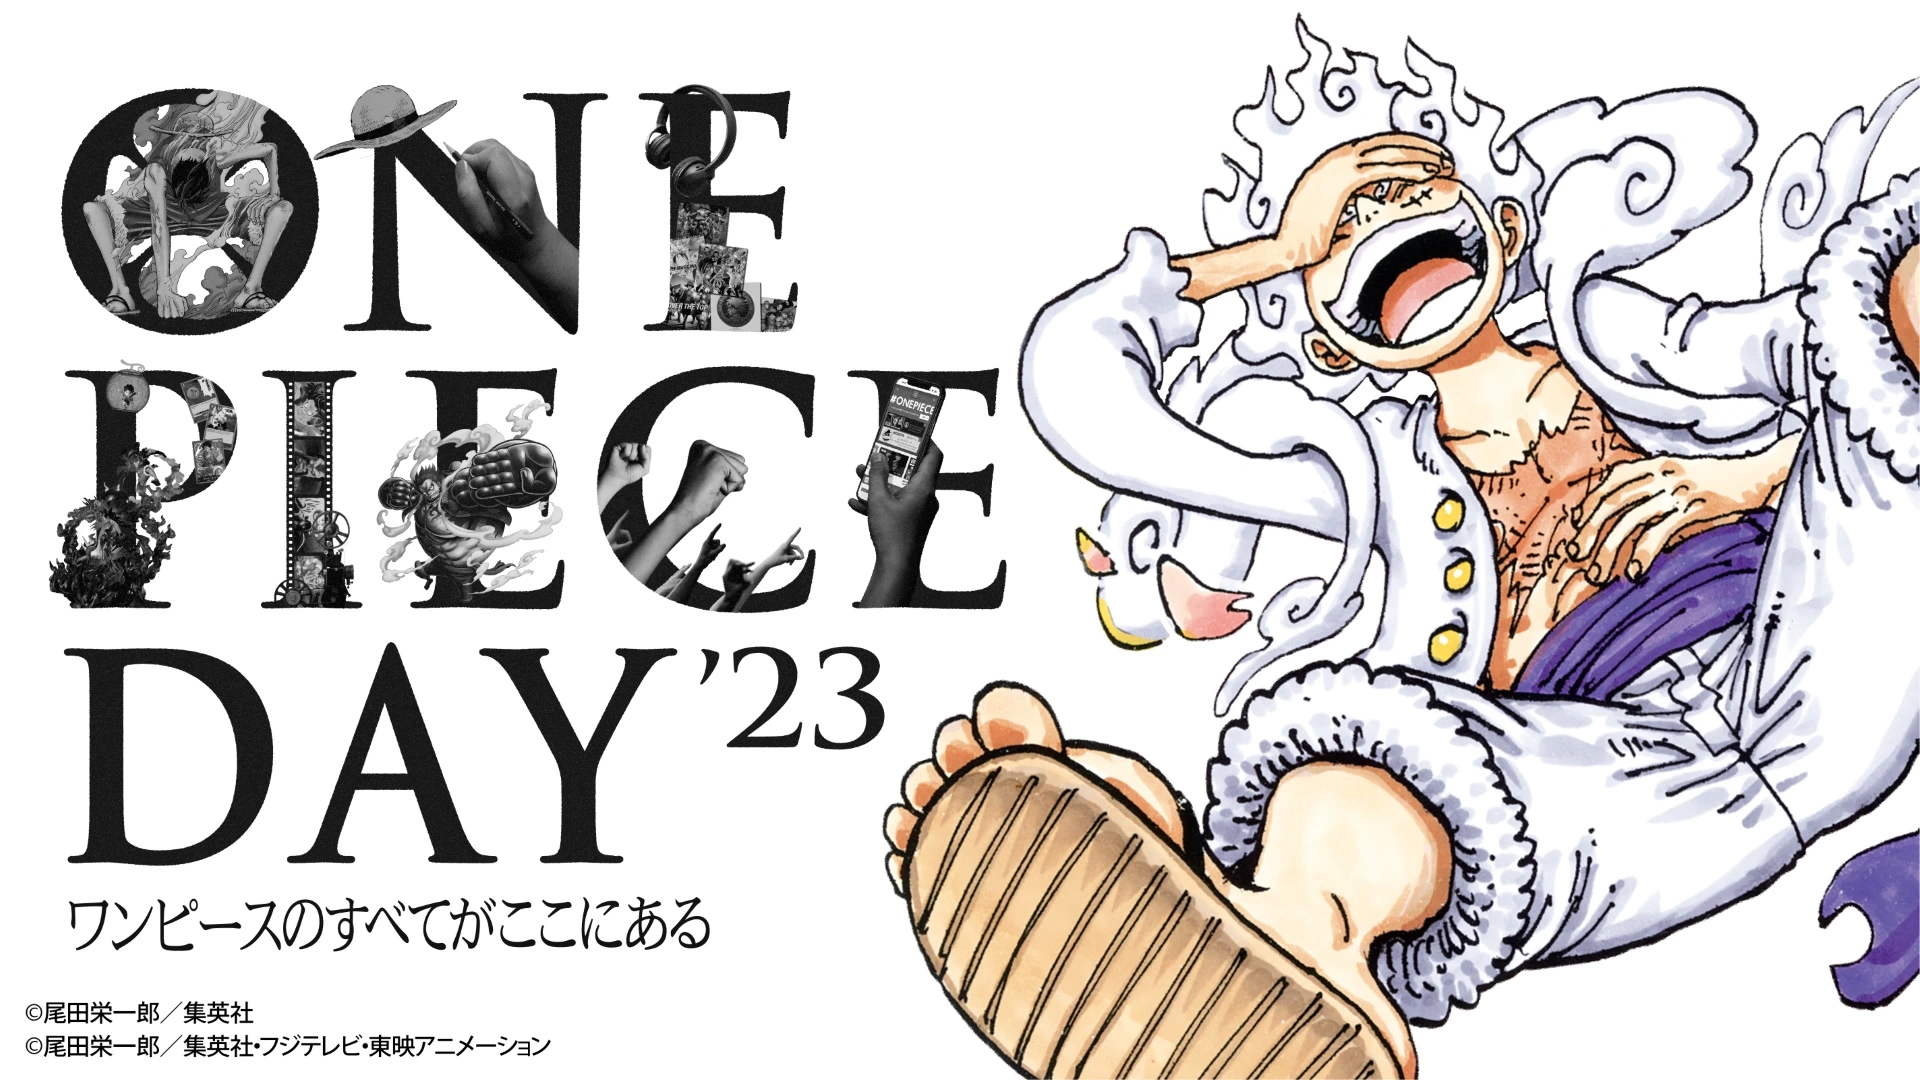 ONE PIECE DAY'23